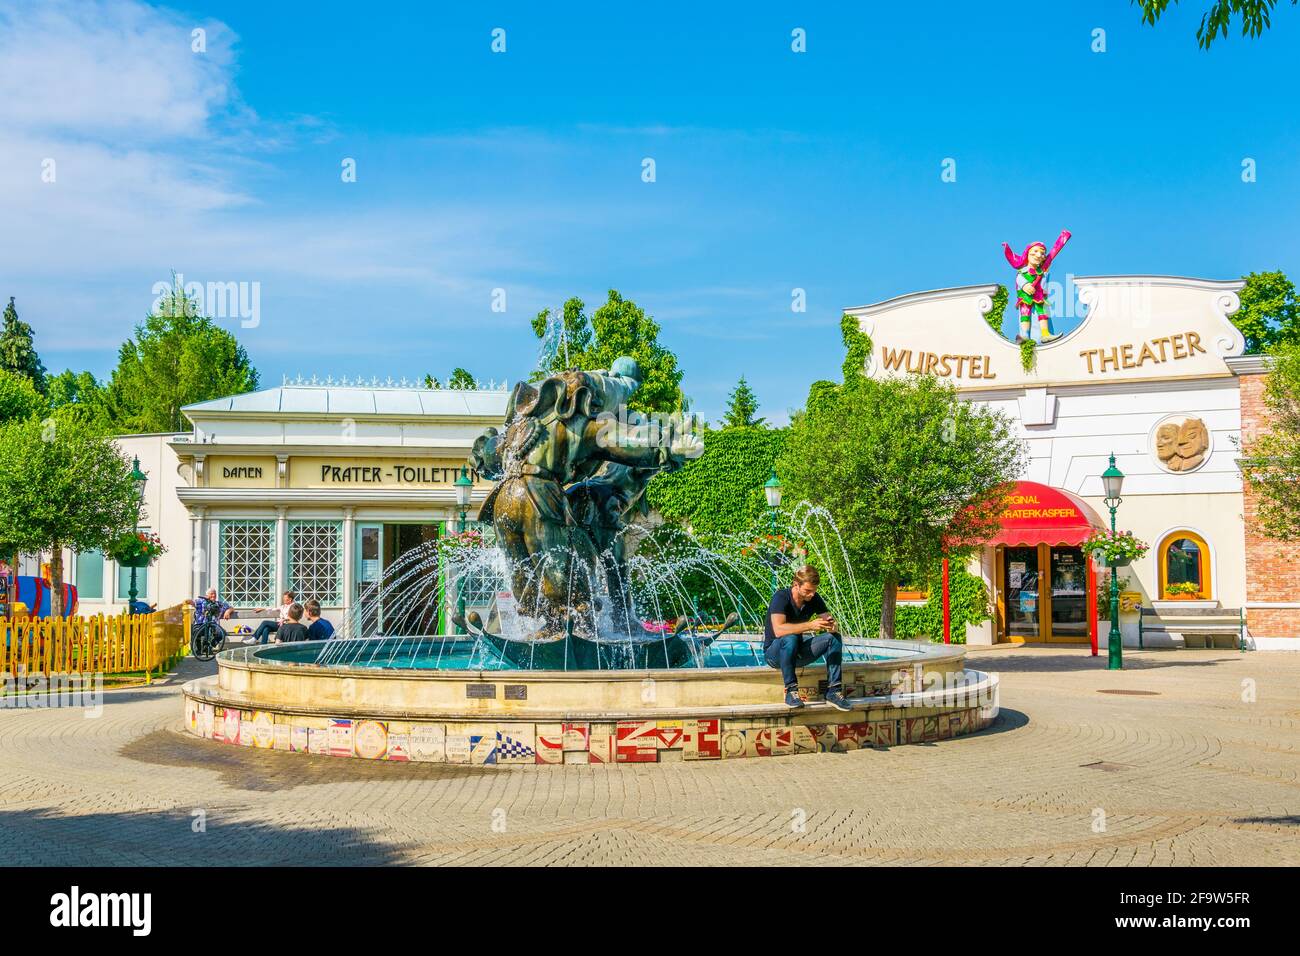 VIENNE, AUTRICHE, JUIN 2016:vue d'une fontaine clown devant le théâtre wurstel dans le parc d'attractions prater à Vienne, Autriche. Banque D'Images